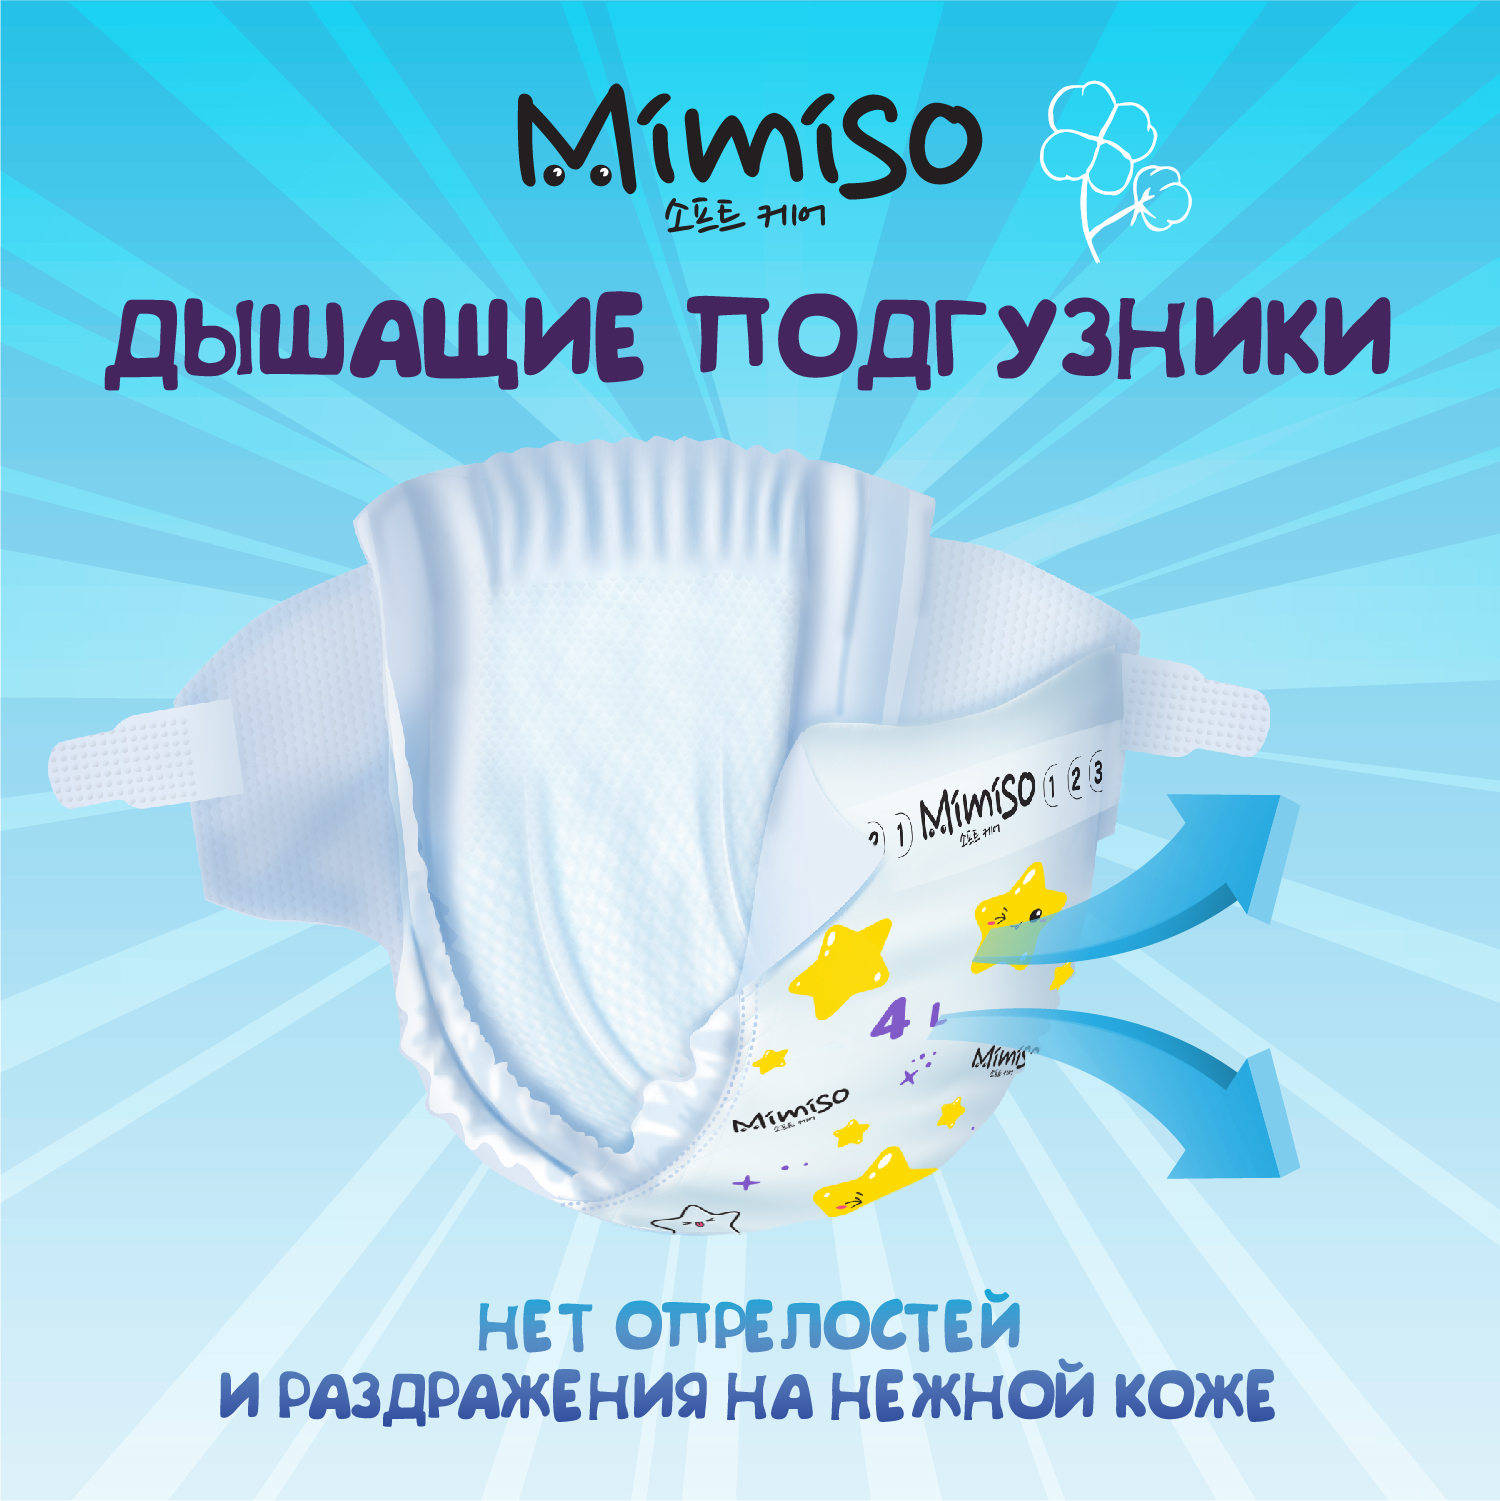 Трусики Mimiso одноразовые для детей 4/L 9-14 кг mega-pack 84шт - фото 3